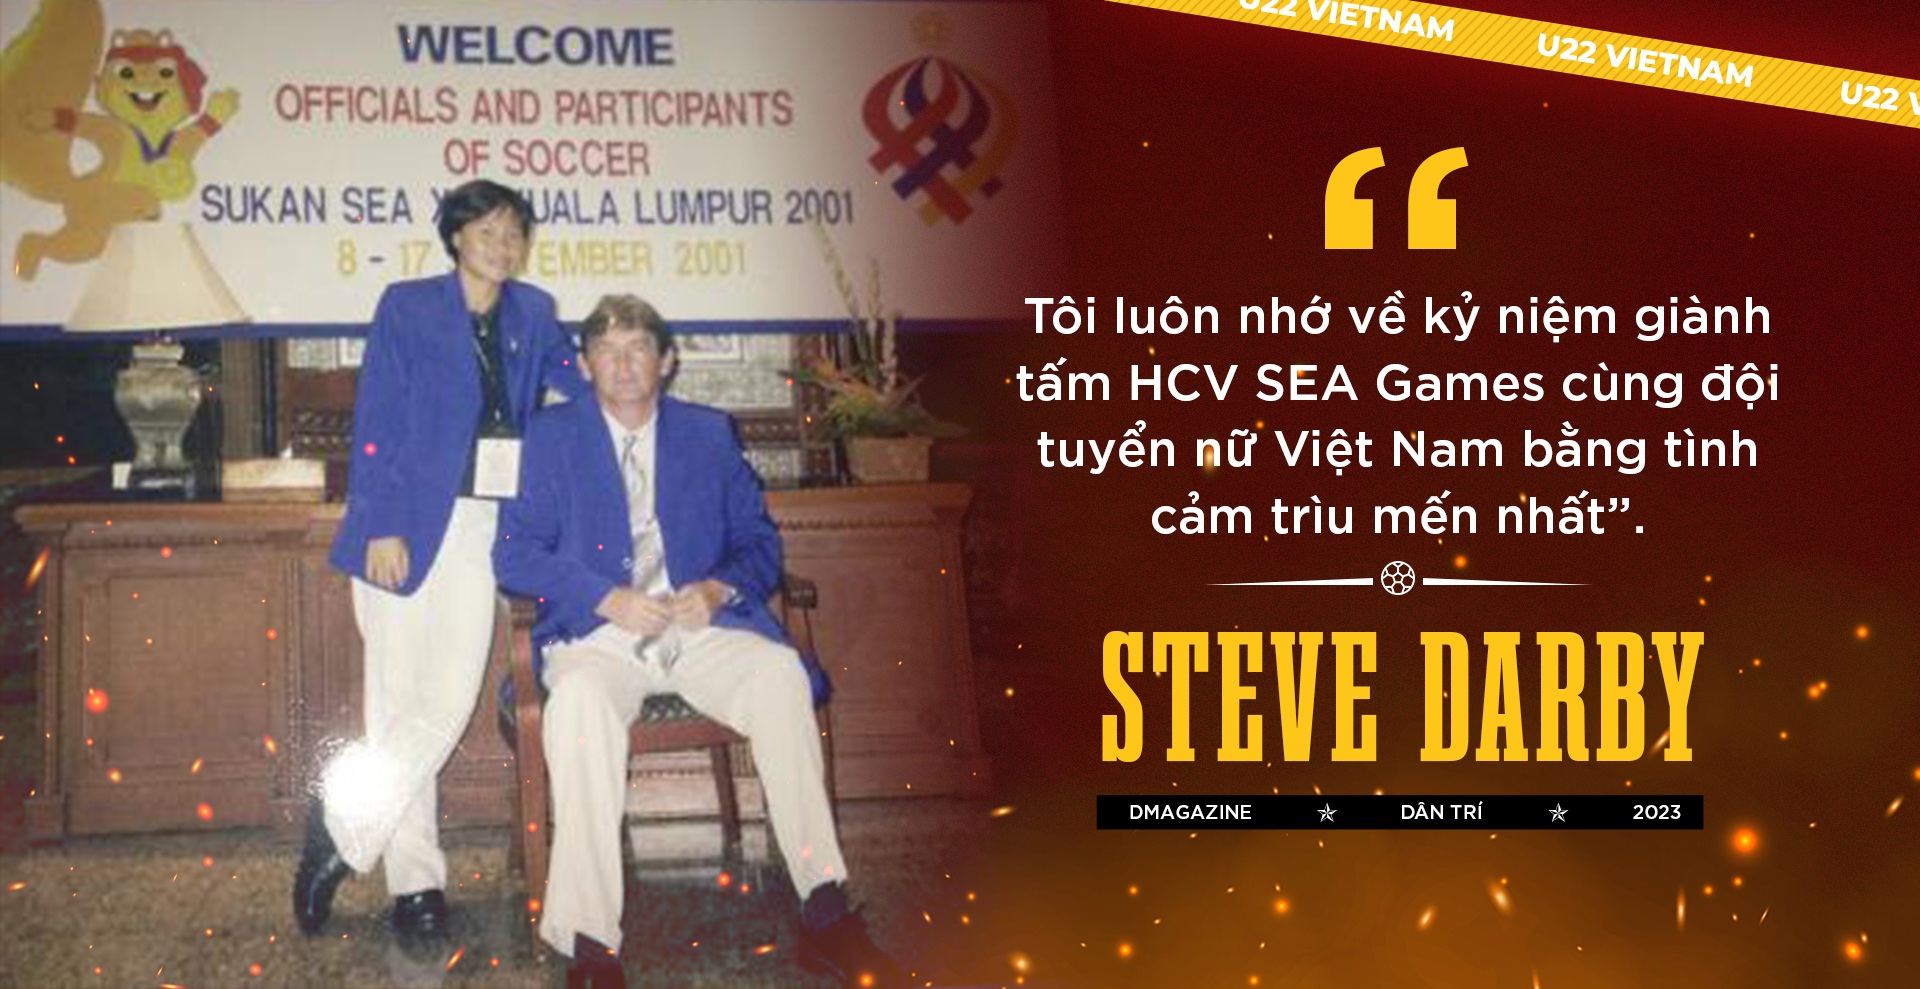 View - Steve Darby: Ký ức hào hùng về SEA Games 21 và tầm nhìn World Cup | Báo Dân trí